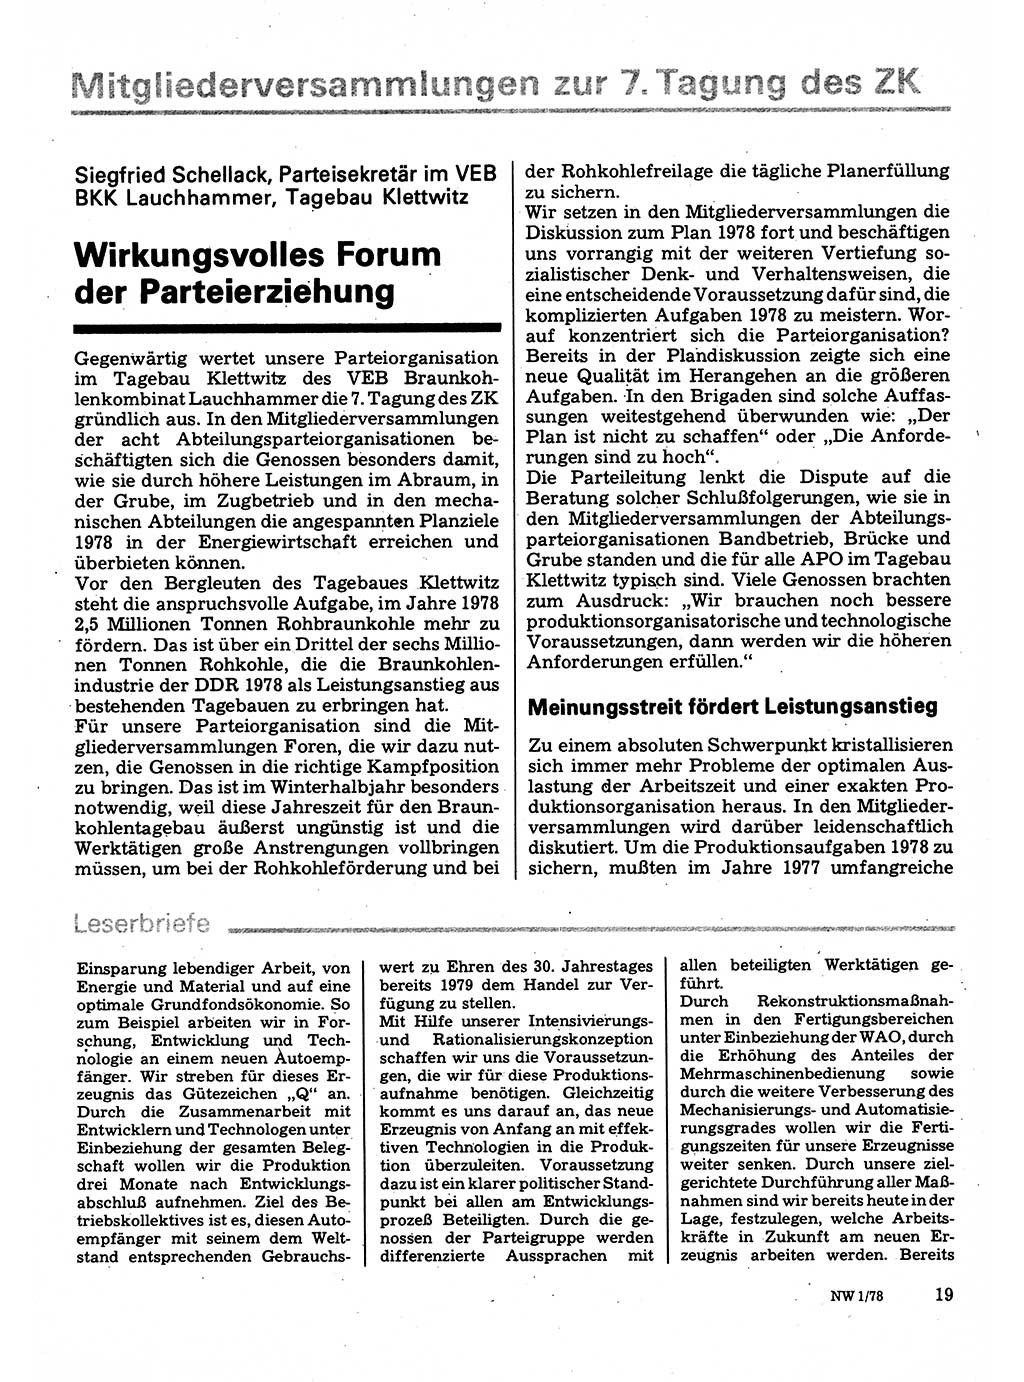 Neuer Weg (NW), Organ des Zentralkomitees (ZK) der SED (Sozialistische Einheitspartei Deutschlands) für Fragen des Parteilebens, 33. Jahrgang [Deutsche Demokratische Republik (DDR)] 1978, Seite 19 (NW ZK SED DDR 1978, S. 19)